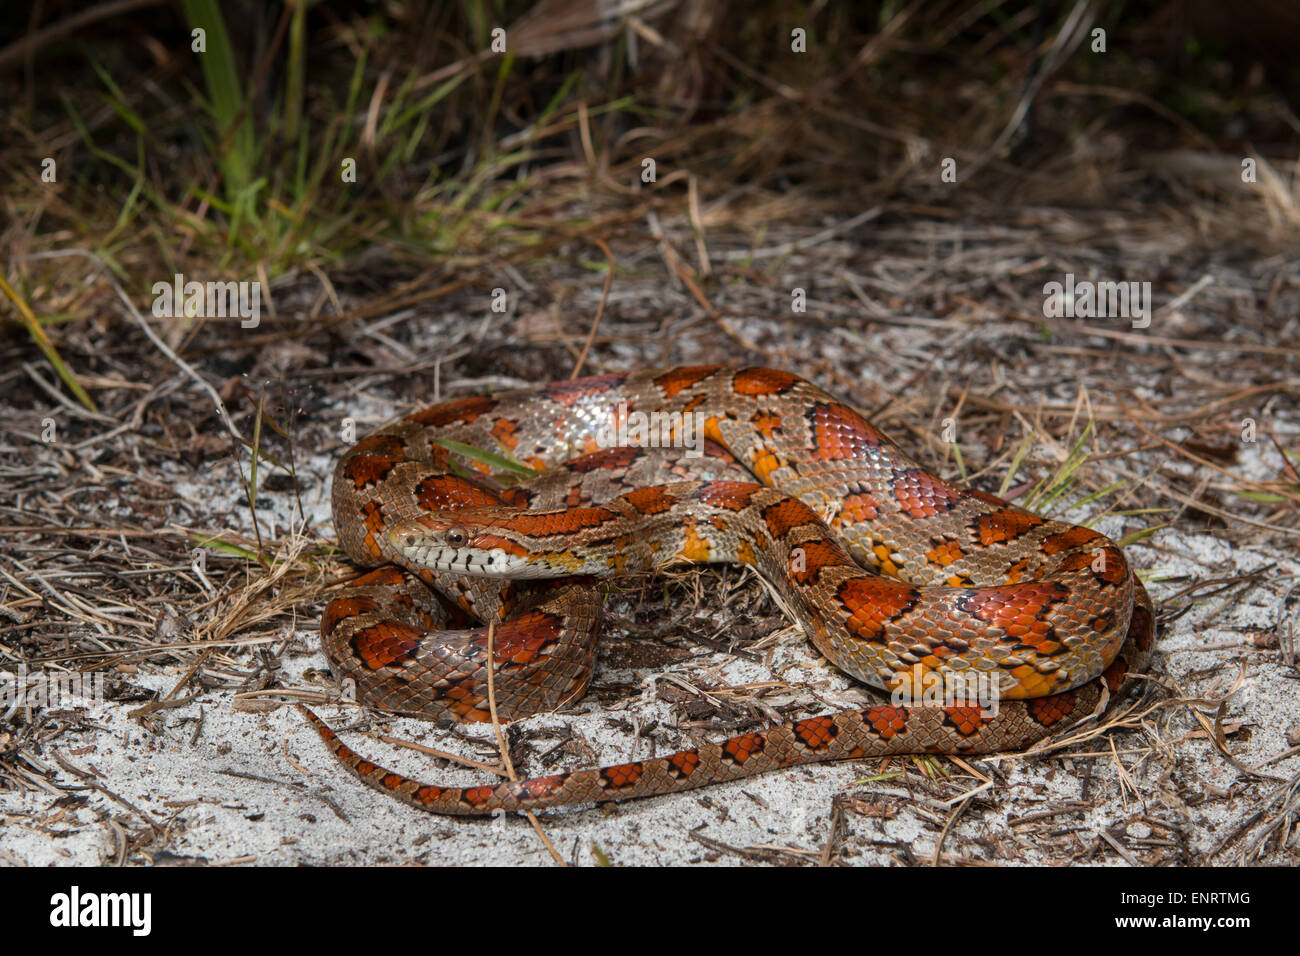 Kornnatter von Okeechobee County, FL - Pantherophis guttatus Stockfoto